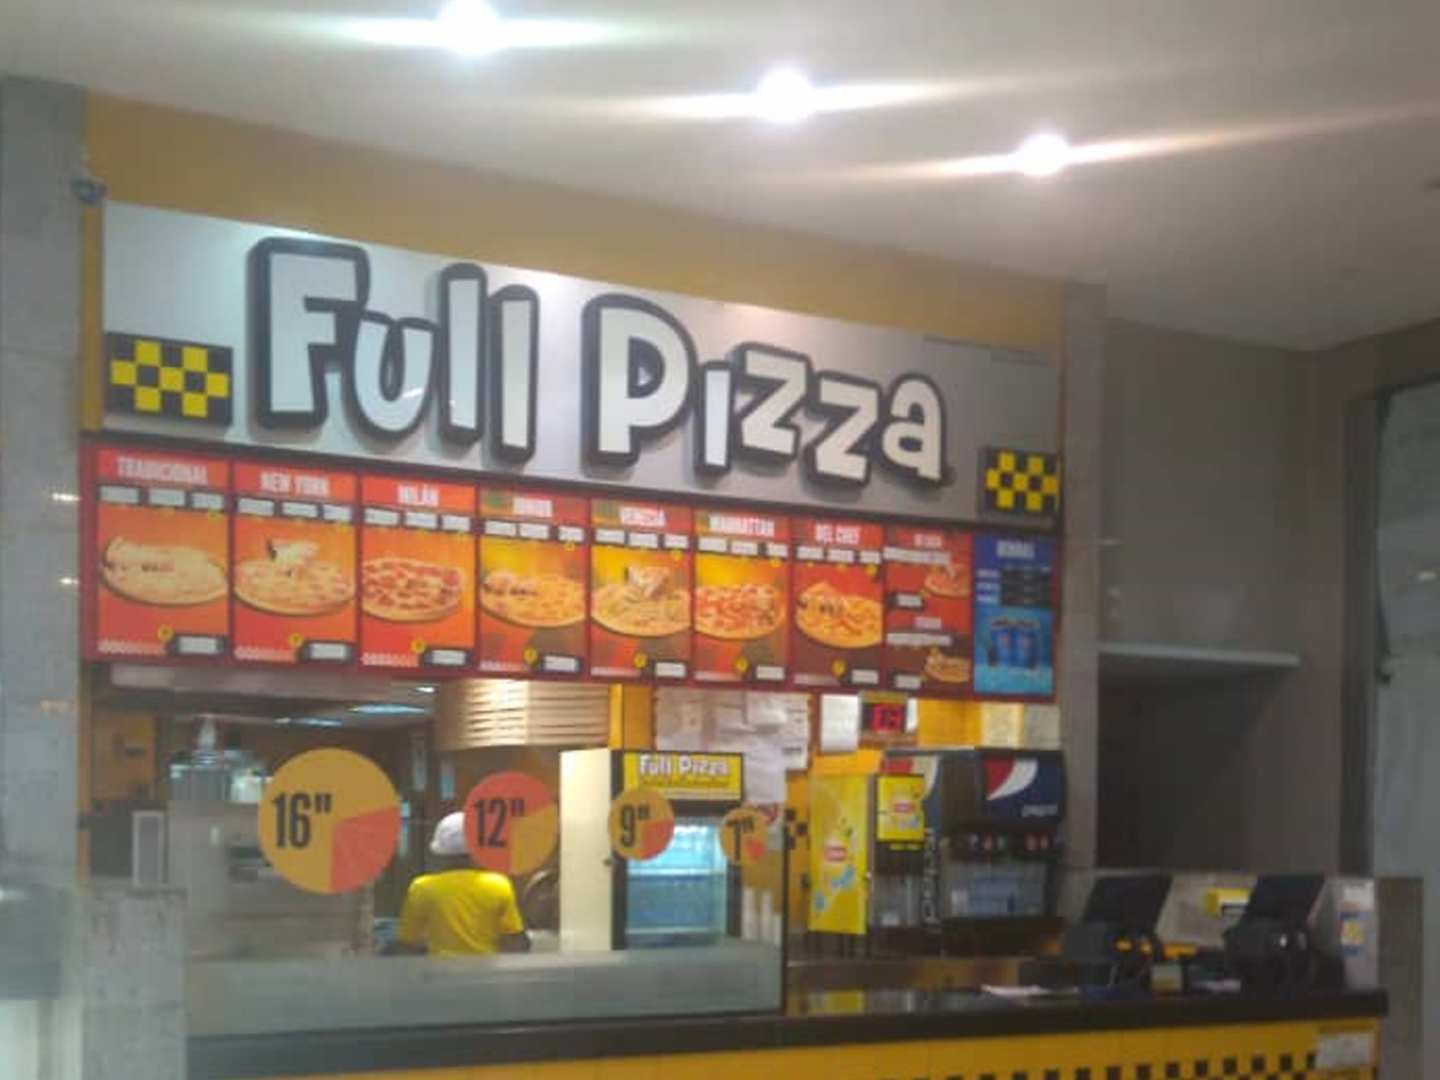 Full Pizza (C.C. Líder)